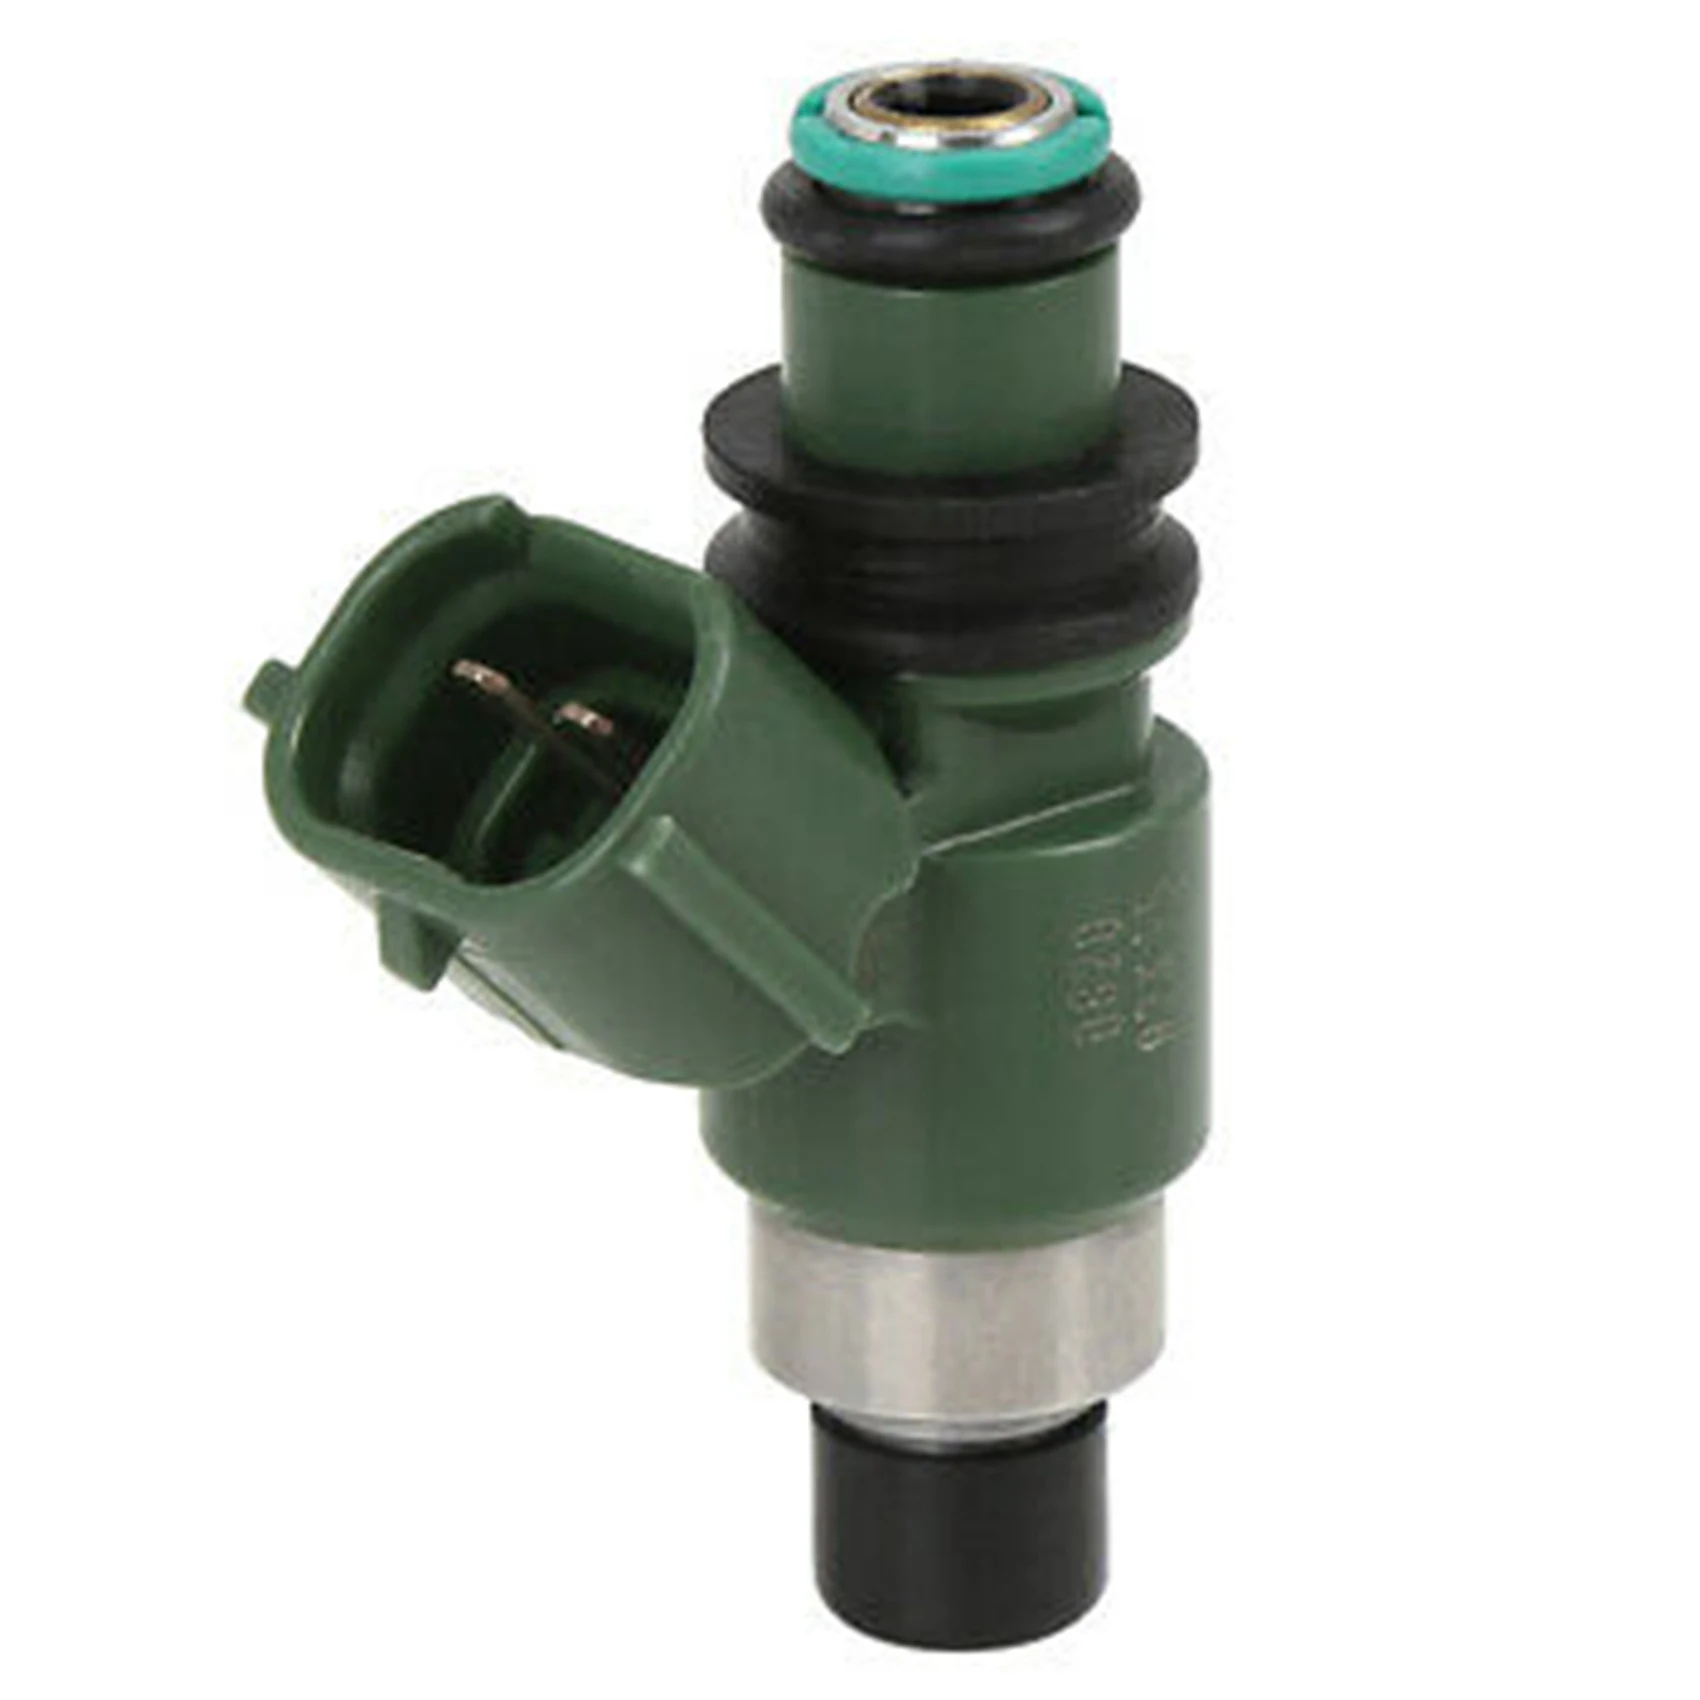 

New Fuel Injector 16450-HN8-A61 16450HN8A61 for Honda CRF450R Fuel Injectors 12Holes Green Color